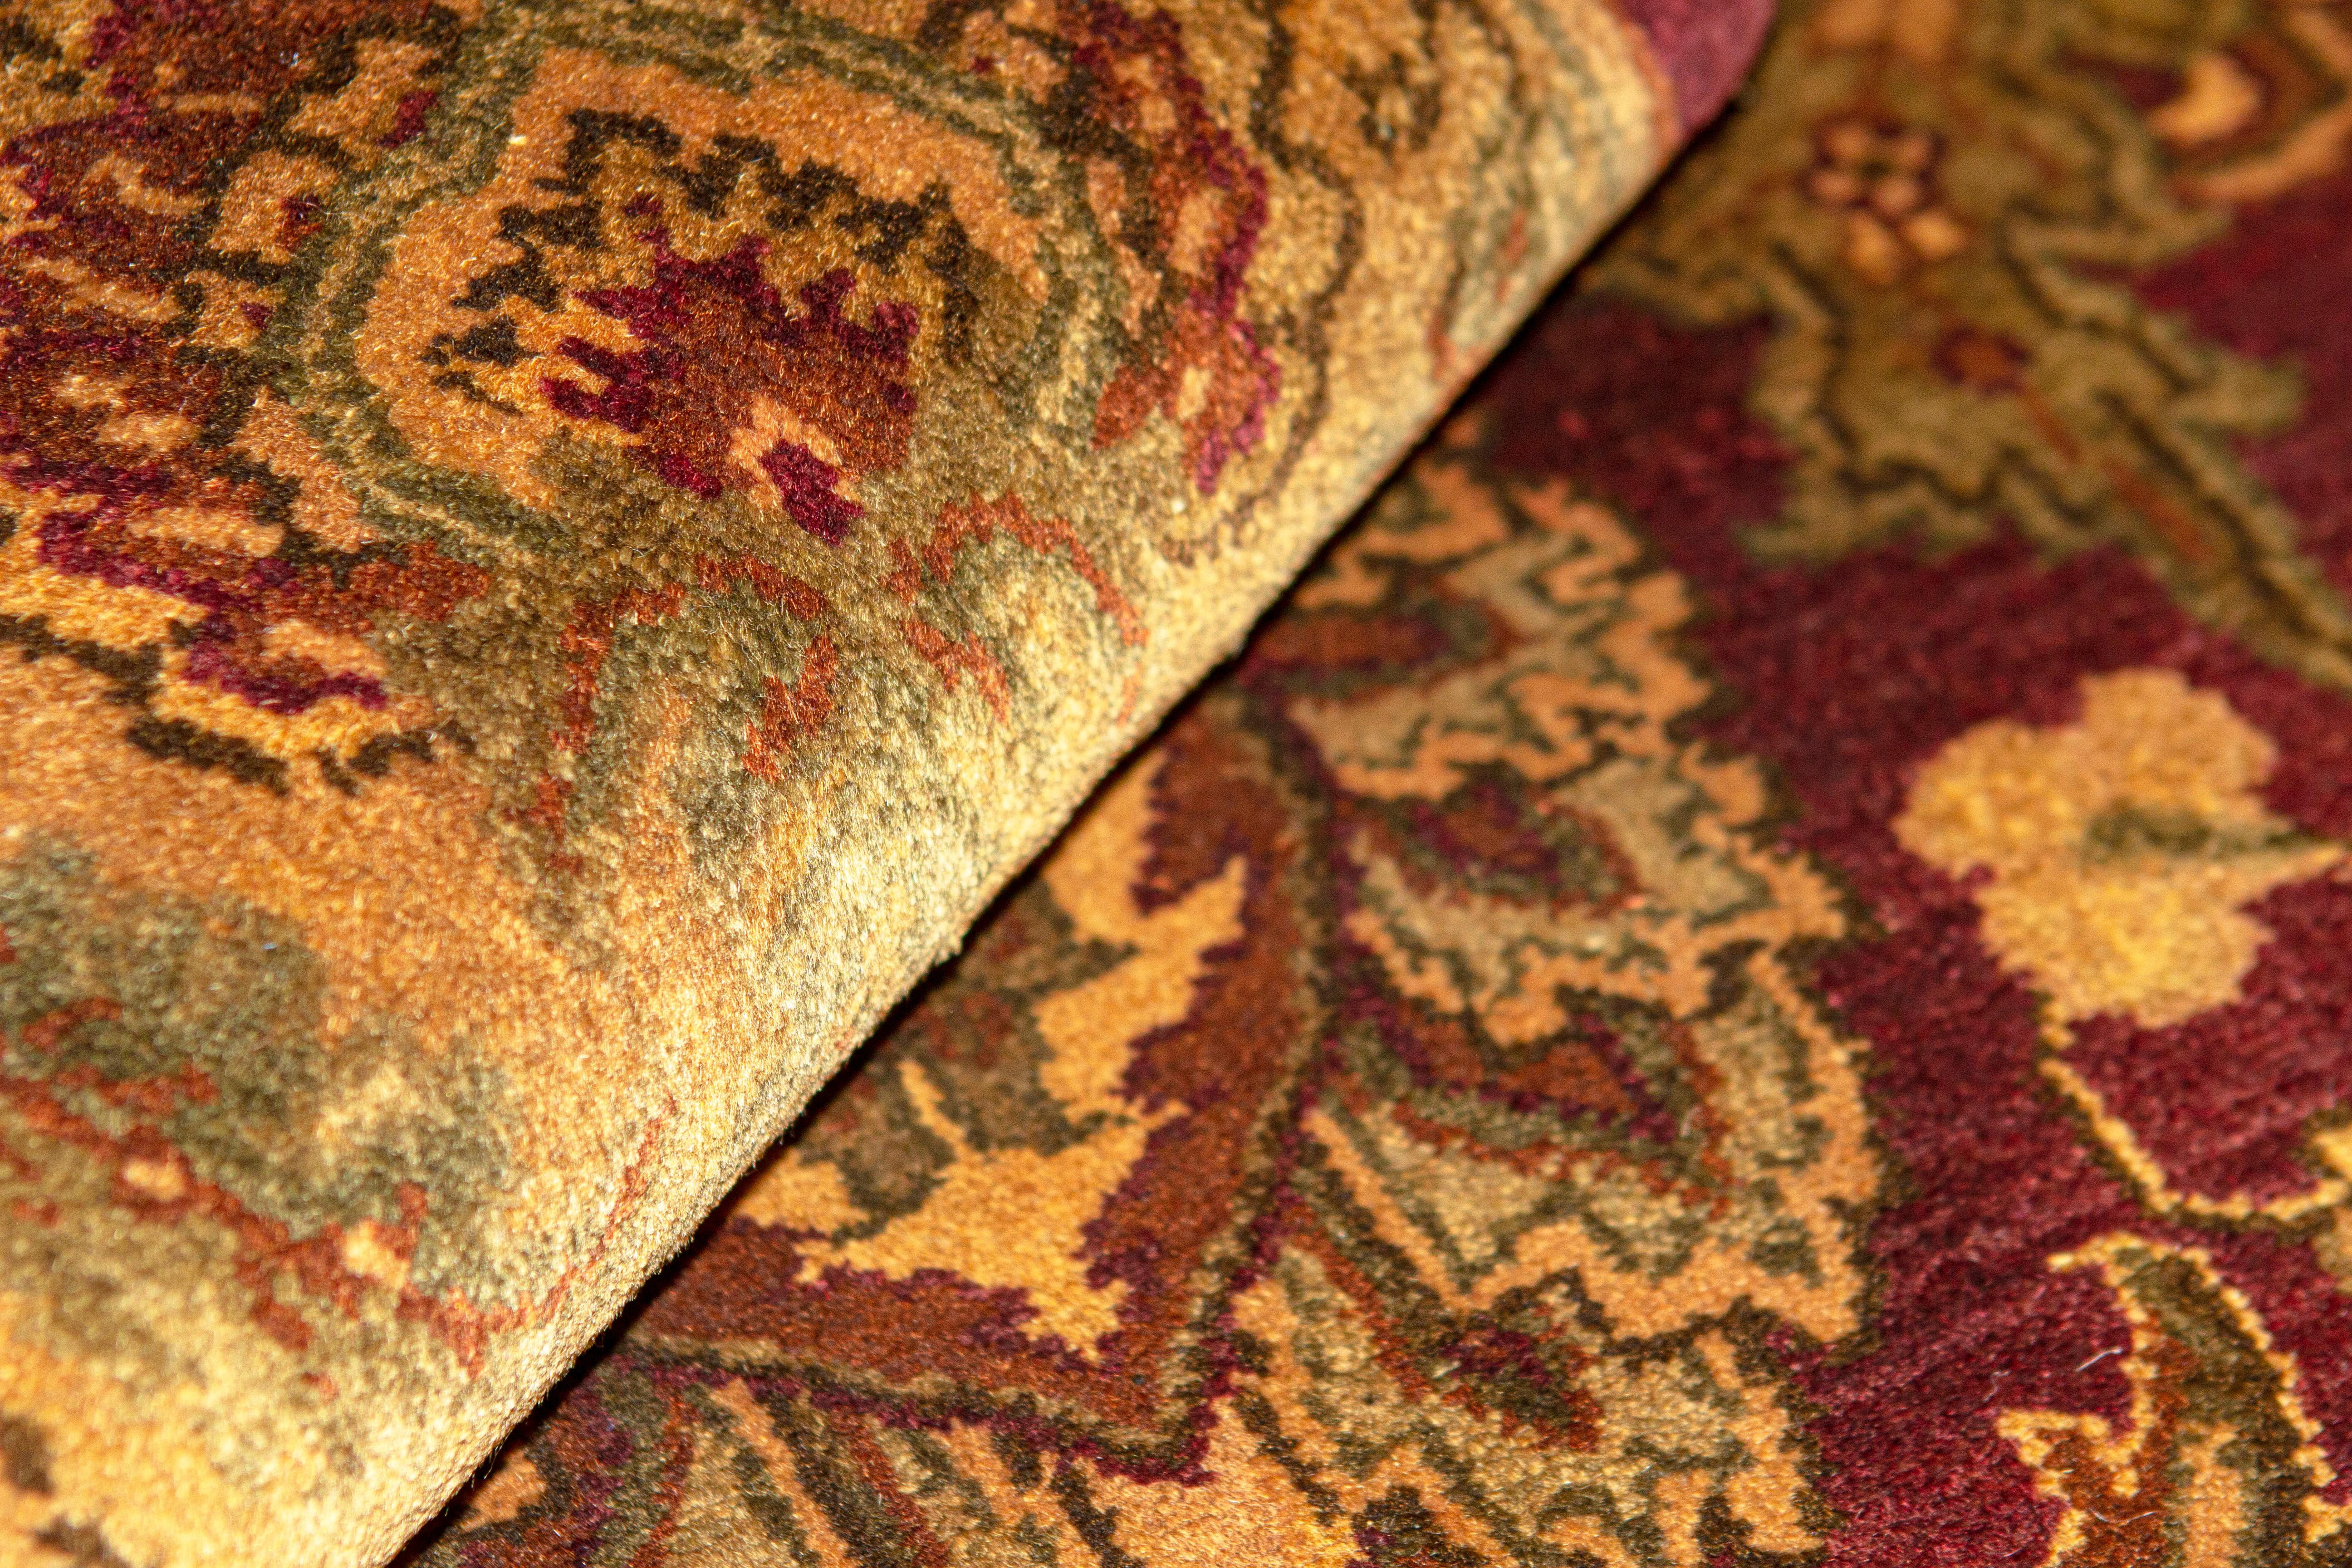 L'inspiration de cette collection vient des tisseurs de tapis indiens du XVIe siècle, qui créaient les plus beaux tapis pour les cours royales des empereurs moghols. Basé sur des motifs orientaux authentiques et tissé à la main dans le style